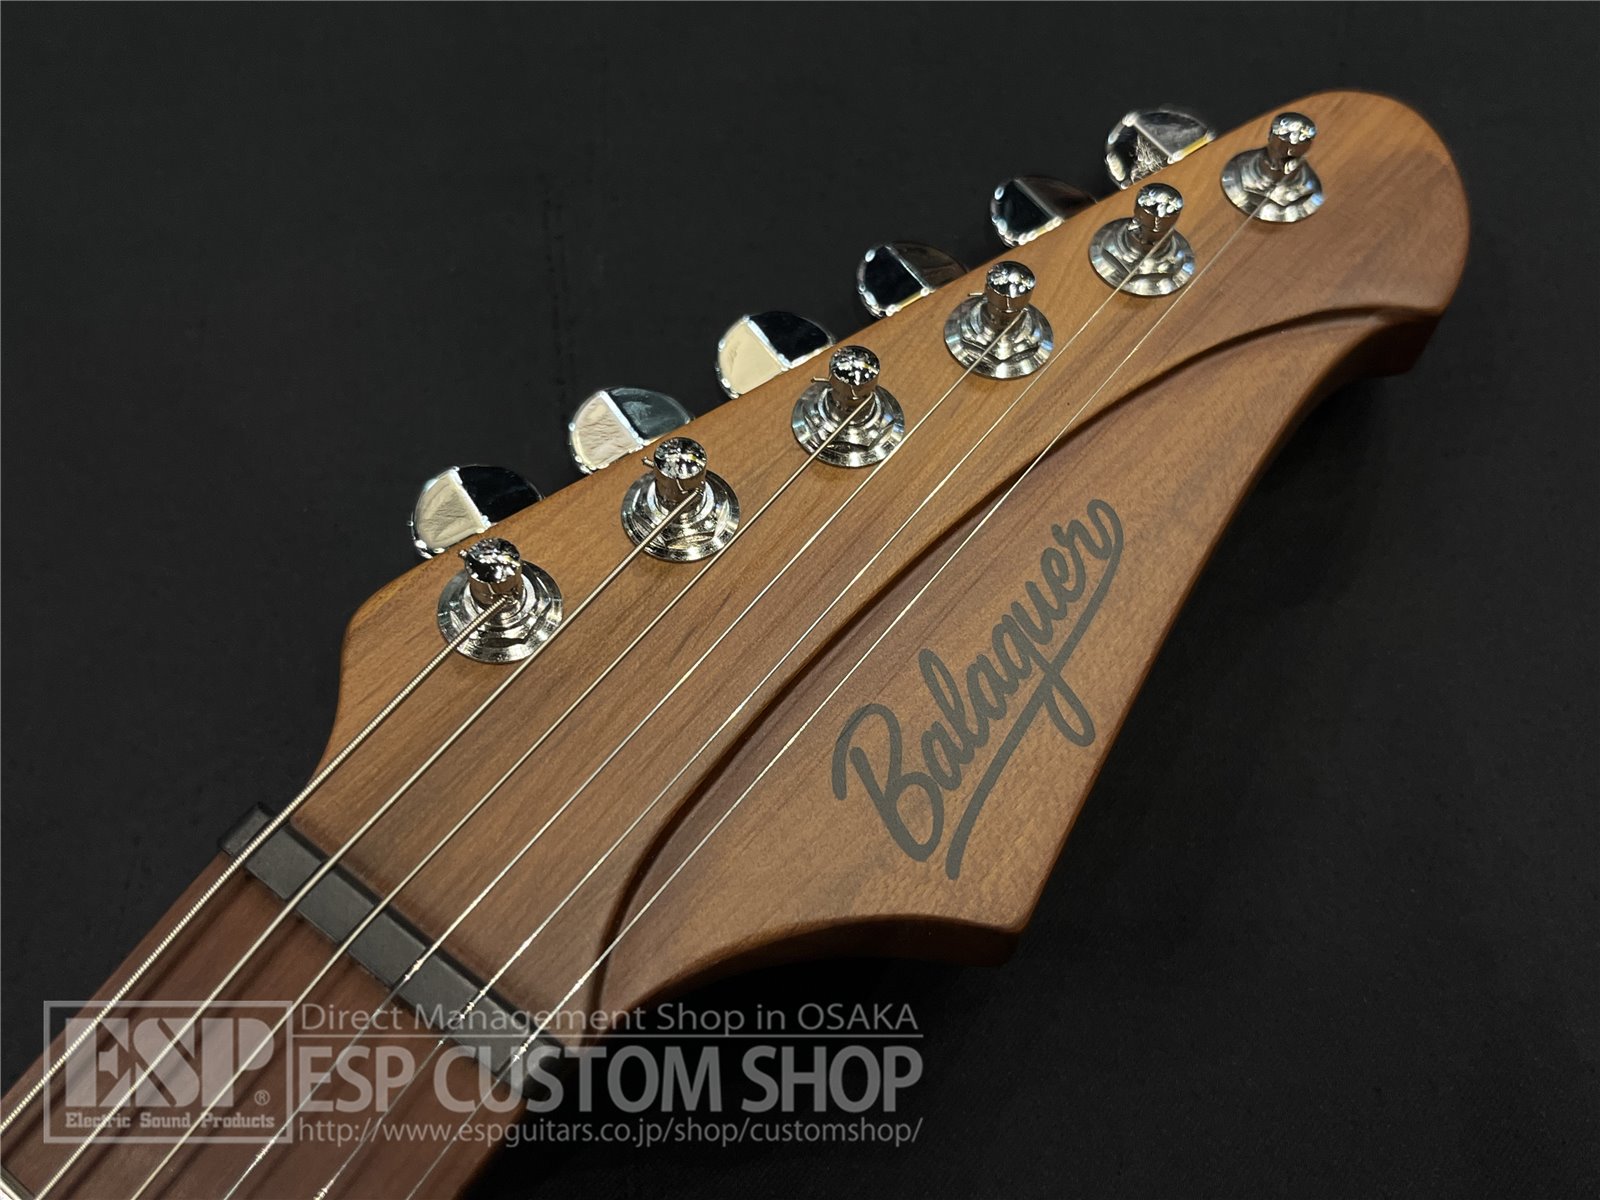 【即納可能】Balaguer Guitars Espada Standard Gloss / Pastel Blue 大阪店